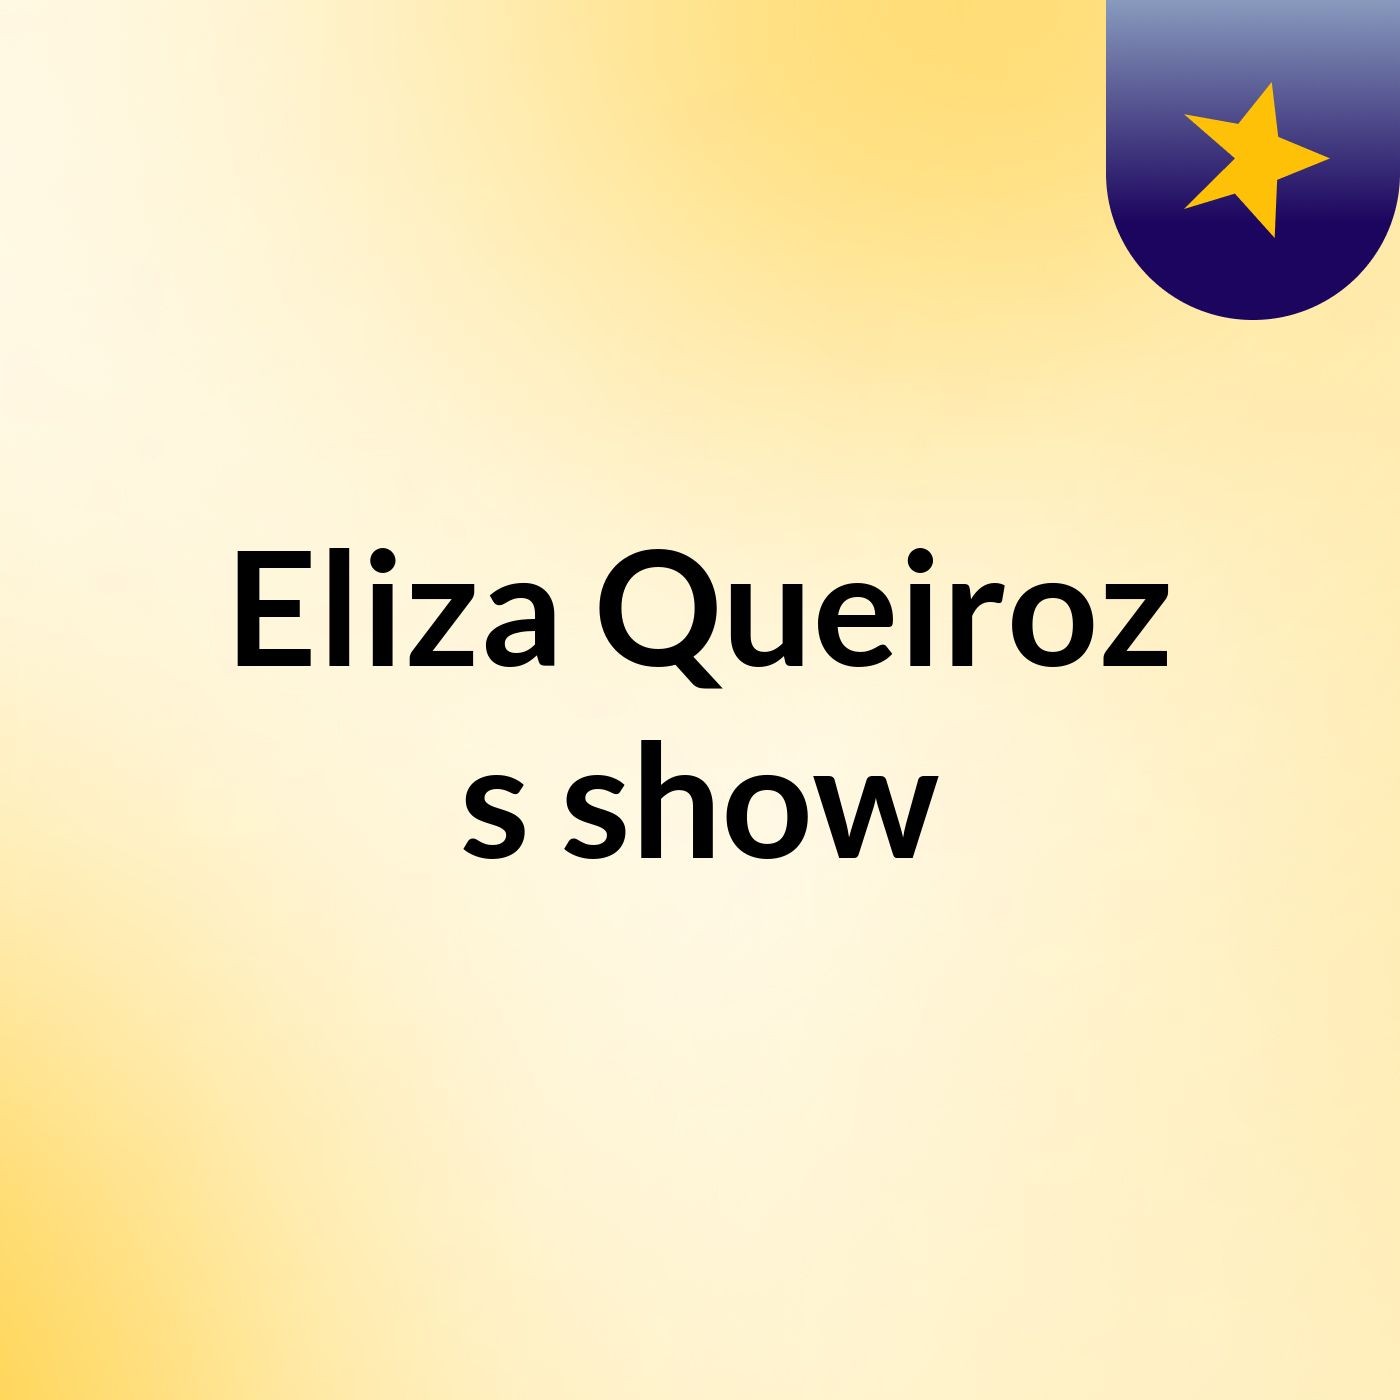 Eliza Queiroz's show